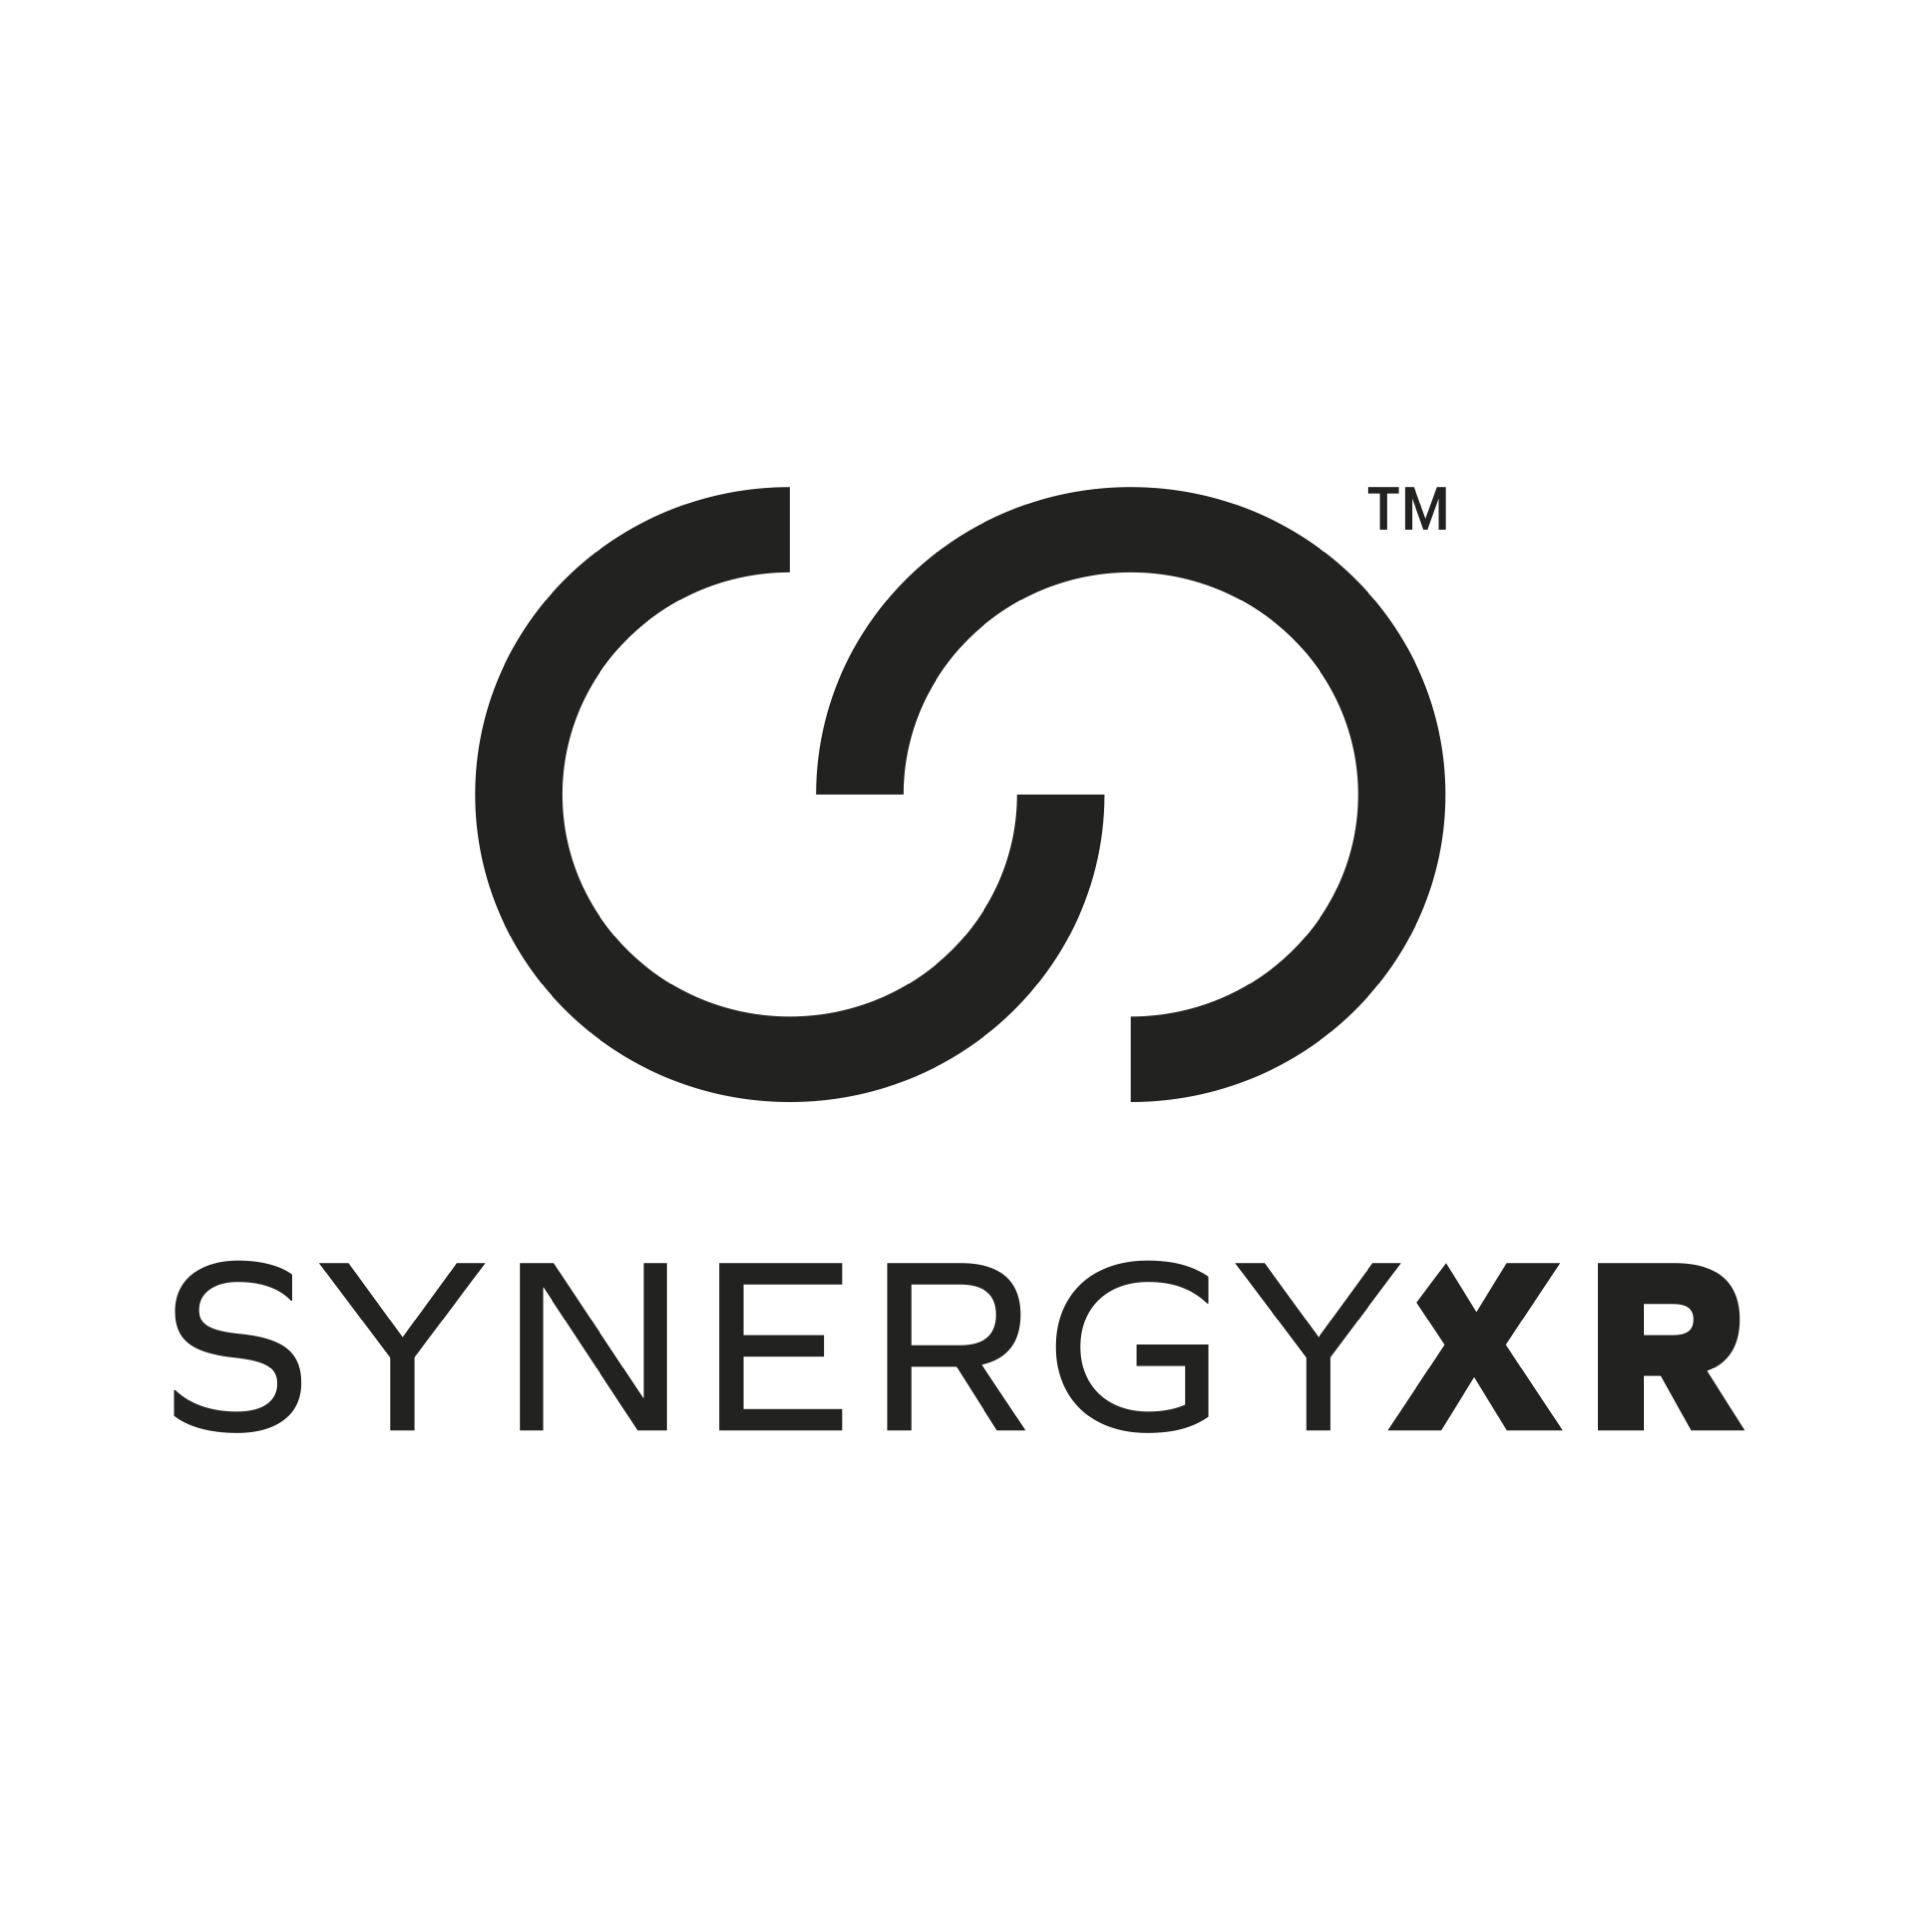 Synergy XR